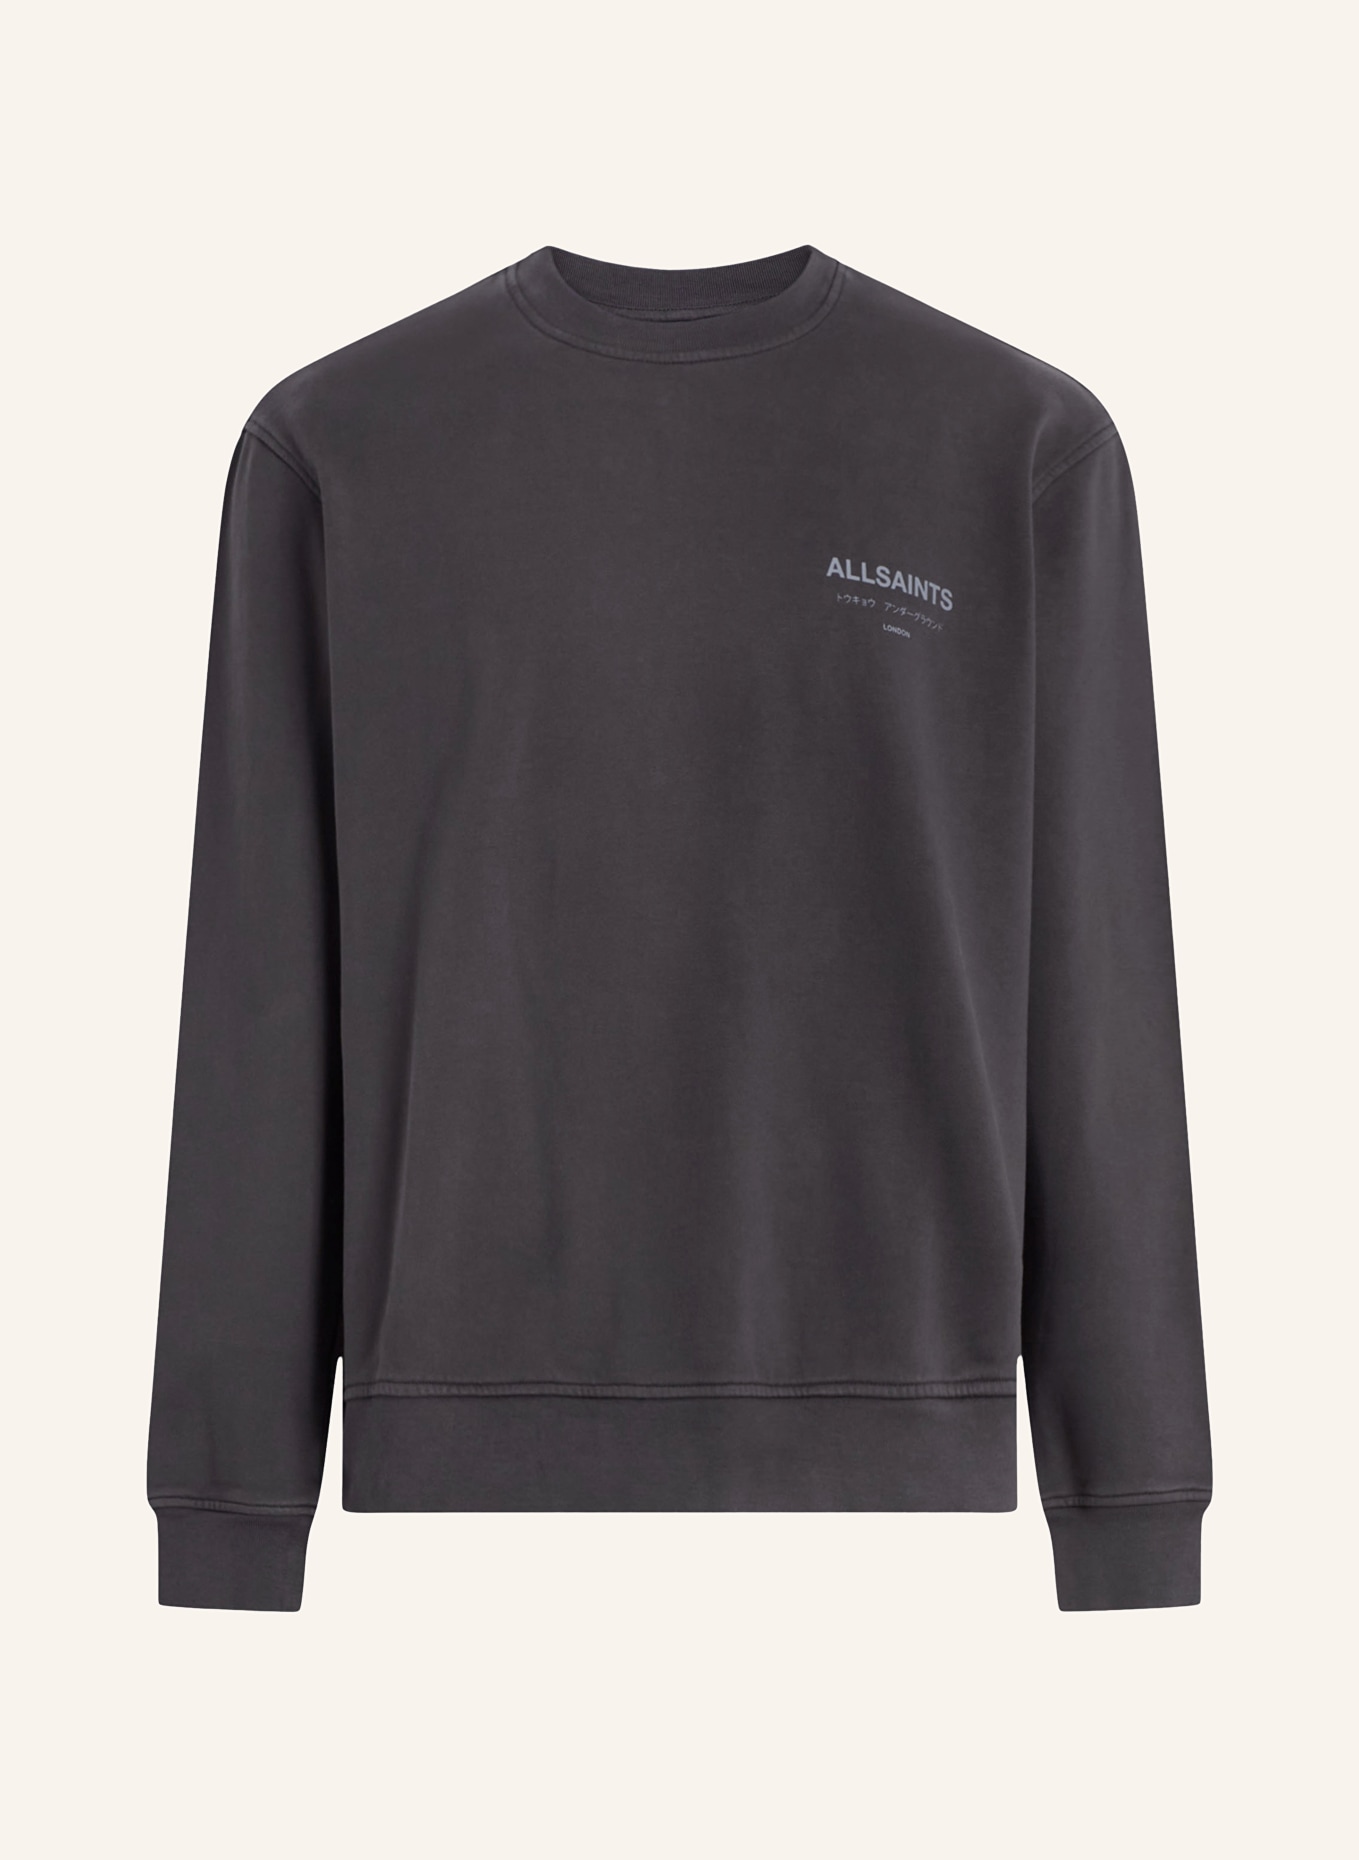 ALLSAINTS Sweatshirt UNDERGROUND, Farbe: GRAU (Bild 1)